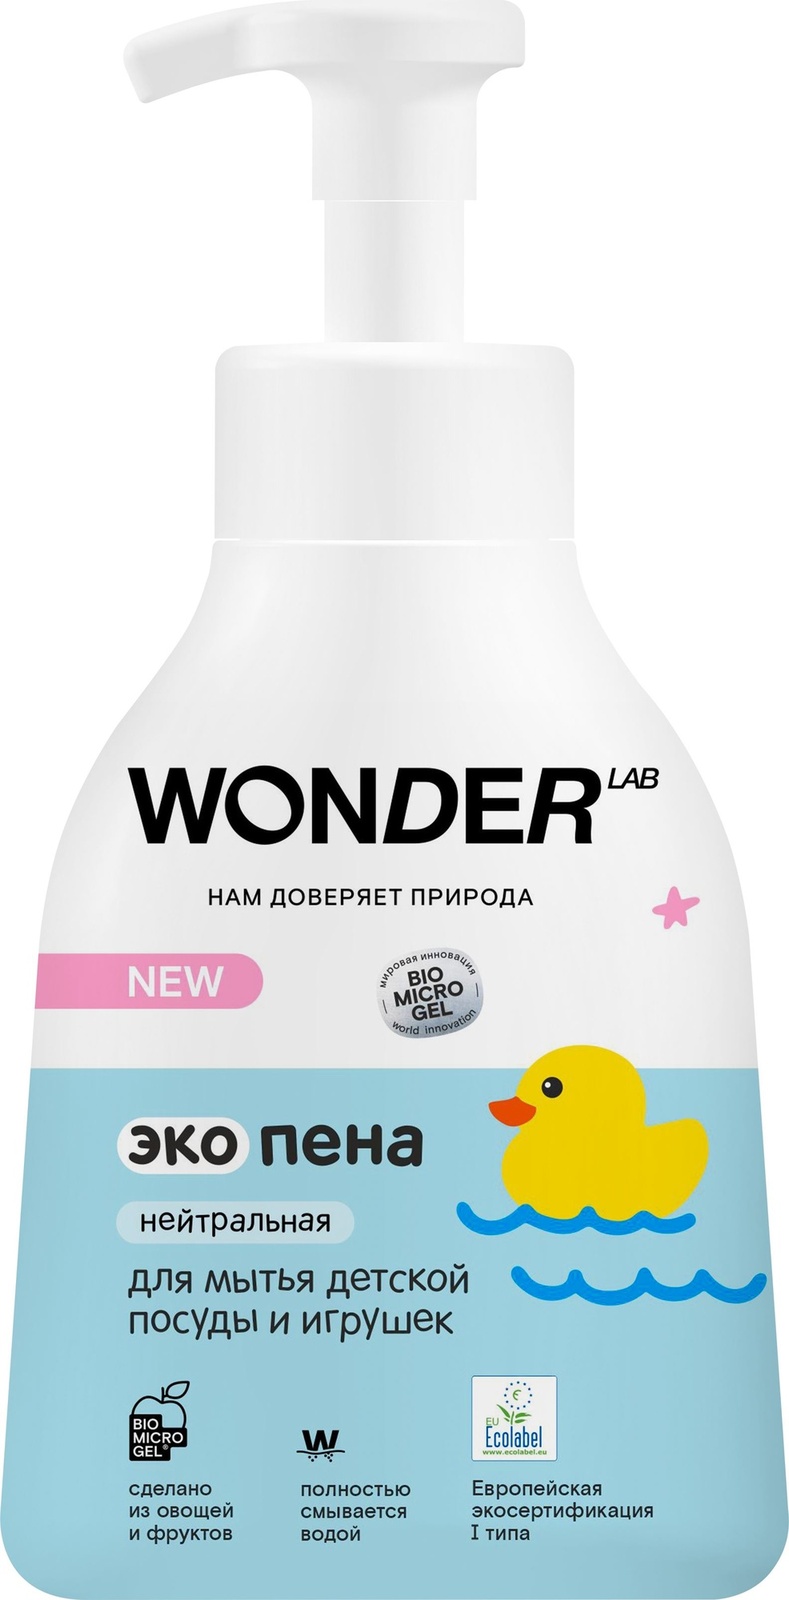 Wonder lab Wonder lab экопена для мытья детской посуды и игрушек (нейтральная) (450 мл) wonder lab wonder lab экопена для мытья детской посуды и игрушек нейтральная 450 мл